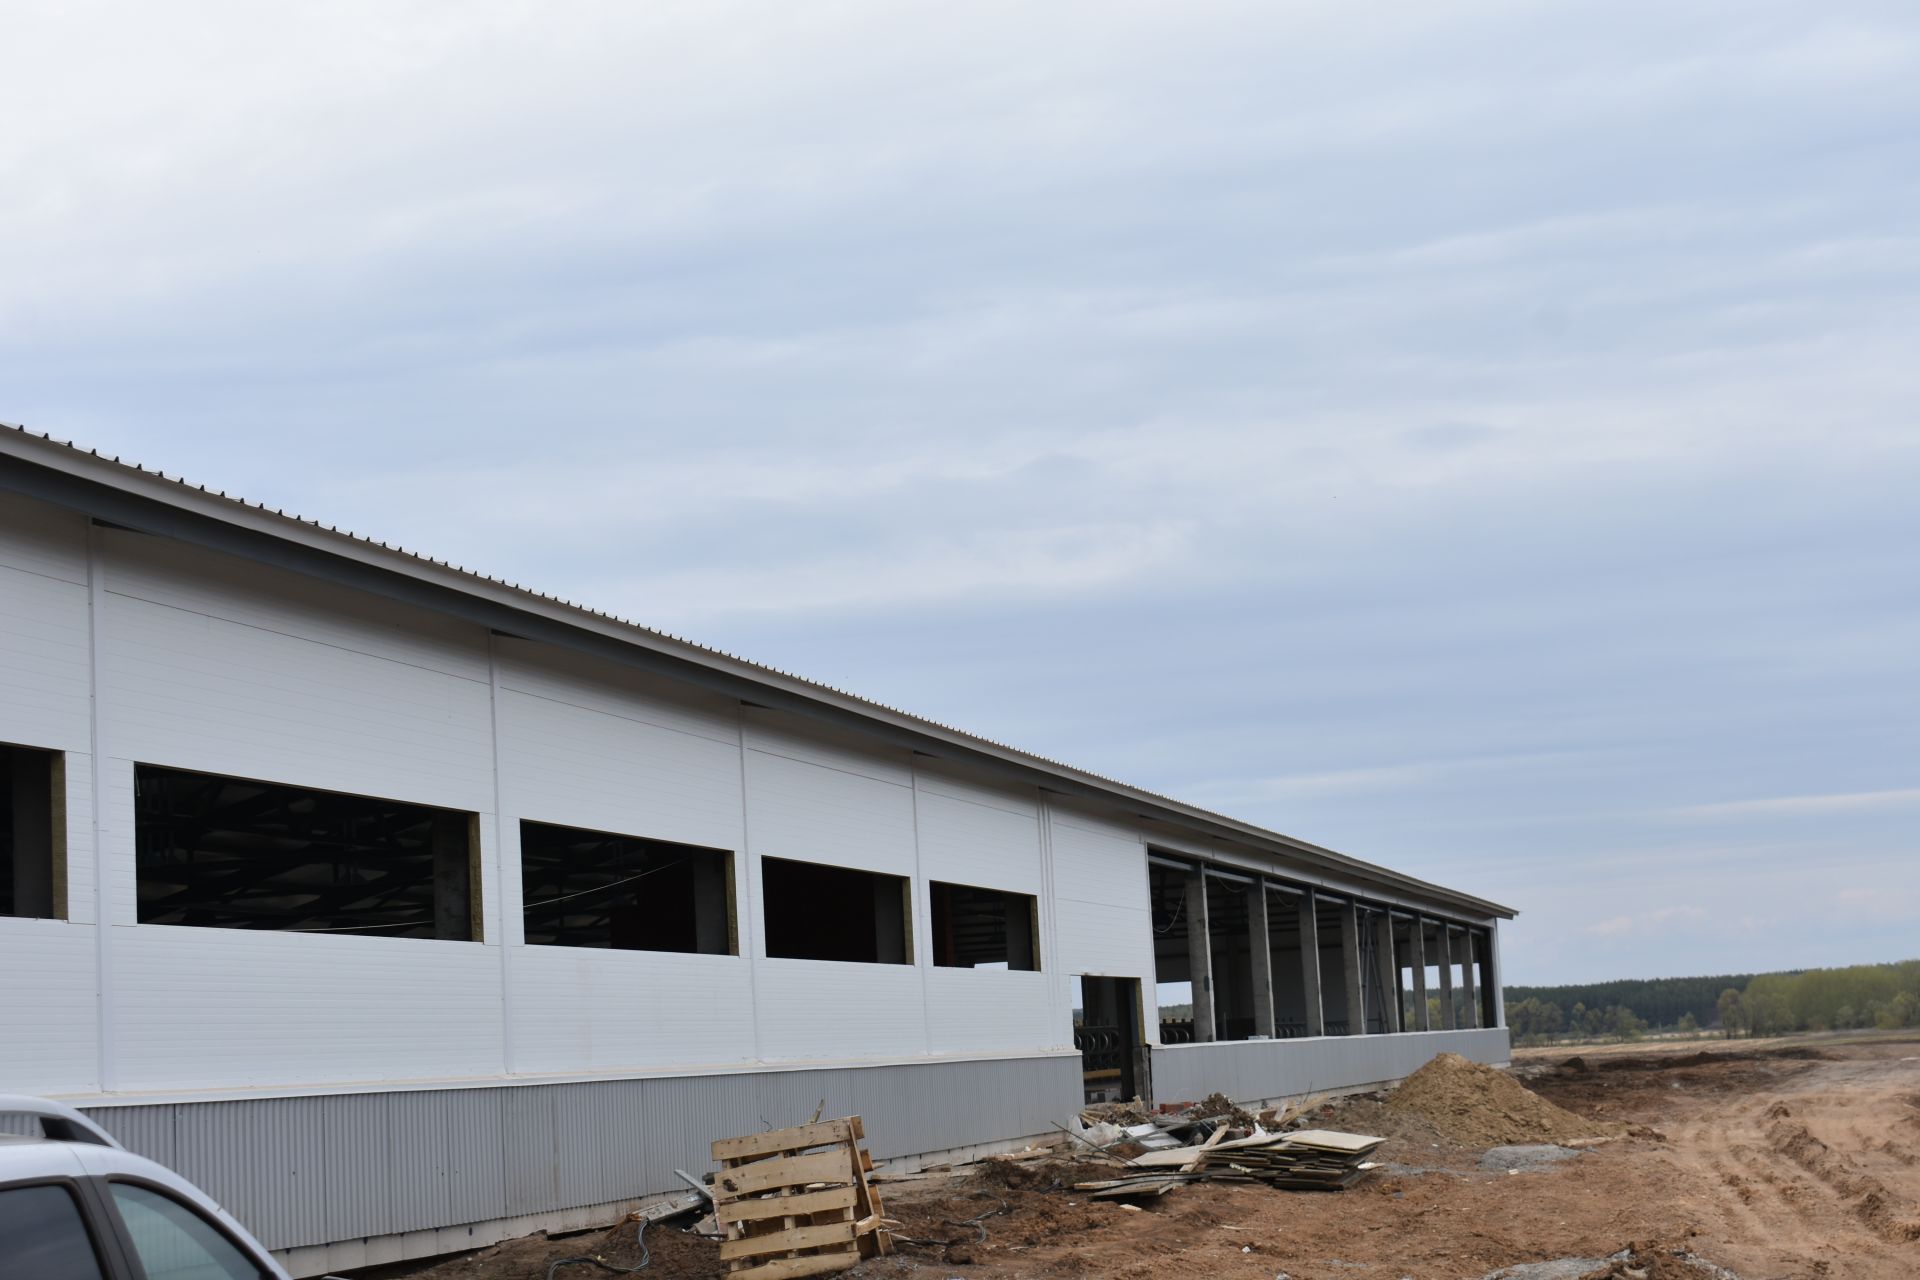 В хозяйстве «Туган як-Агро» продолжается строительство товарно- молочного комплекса